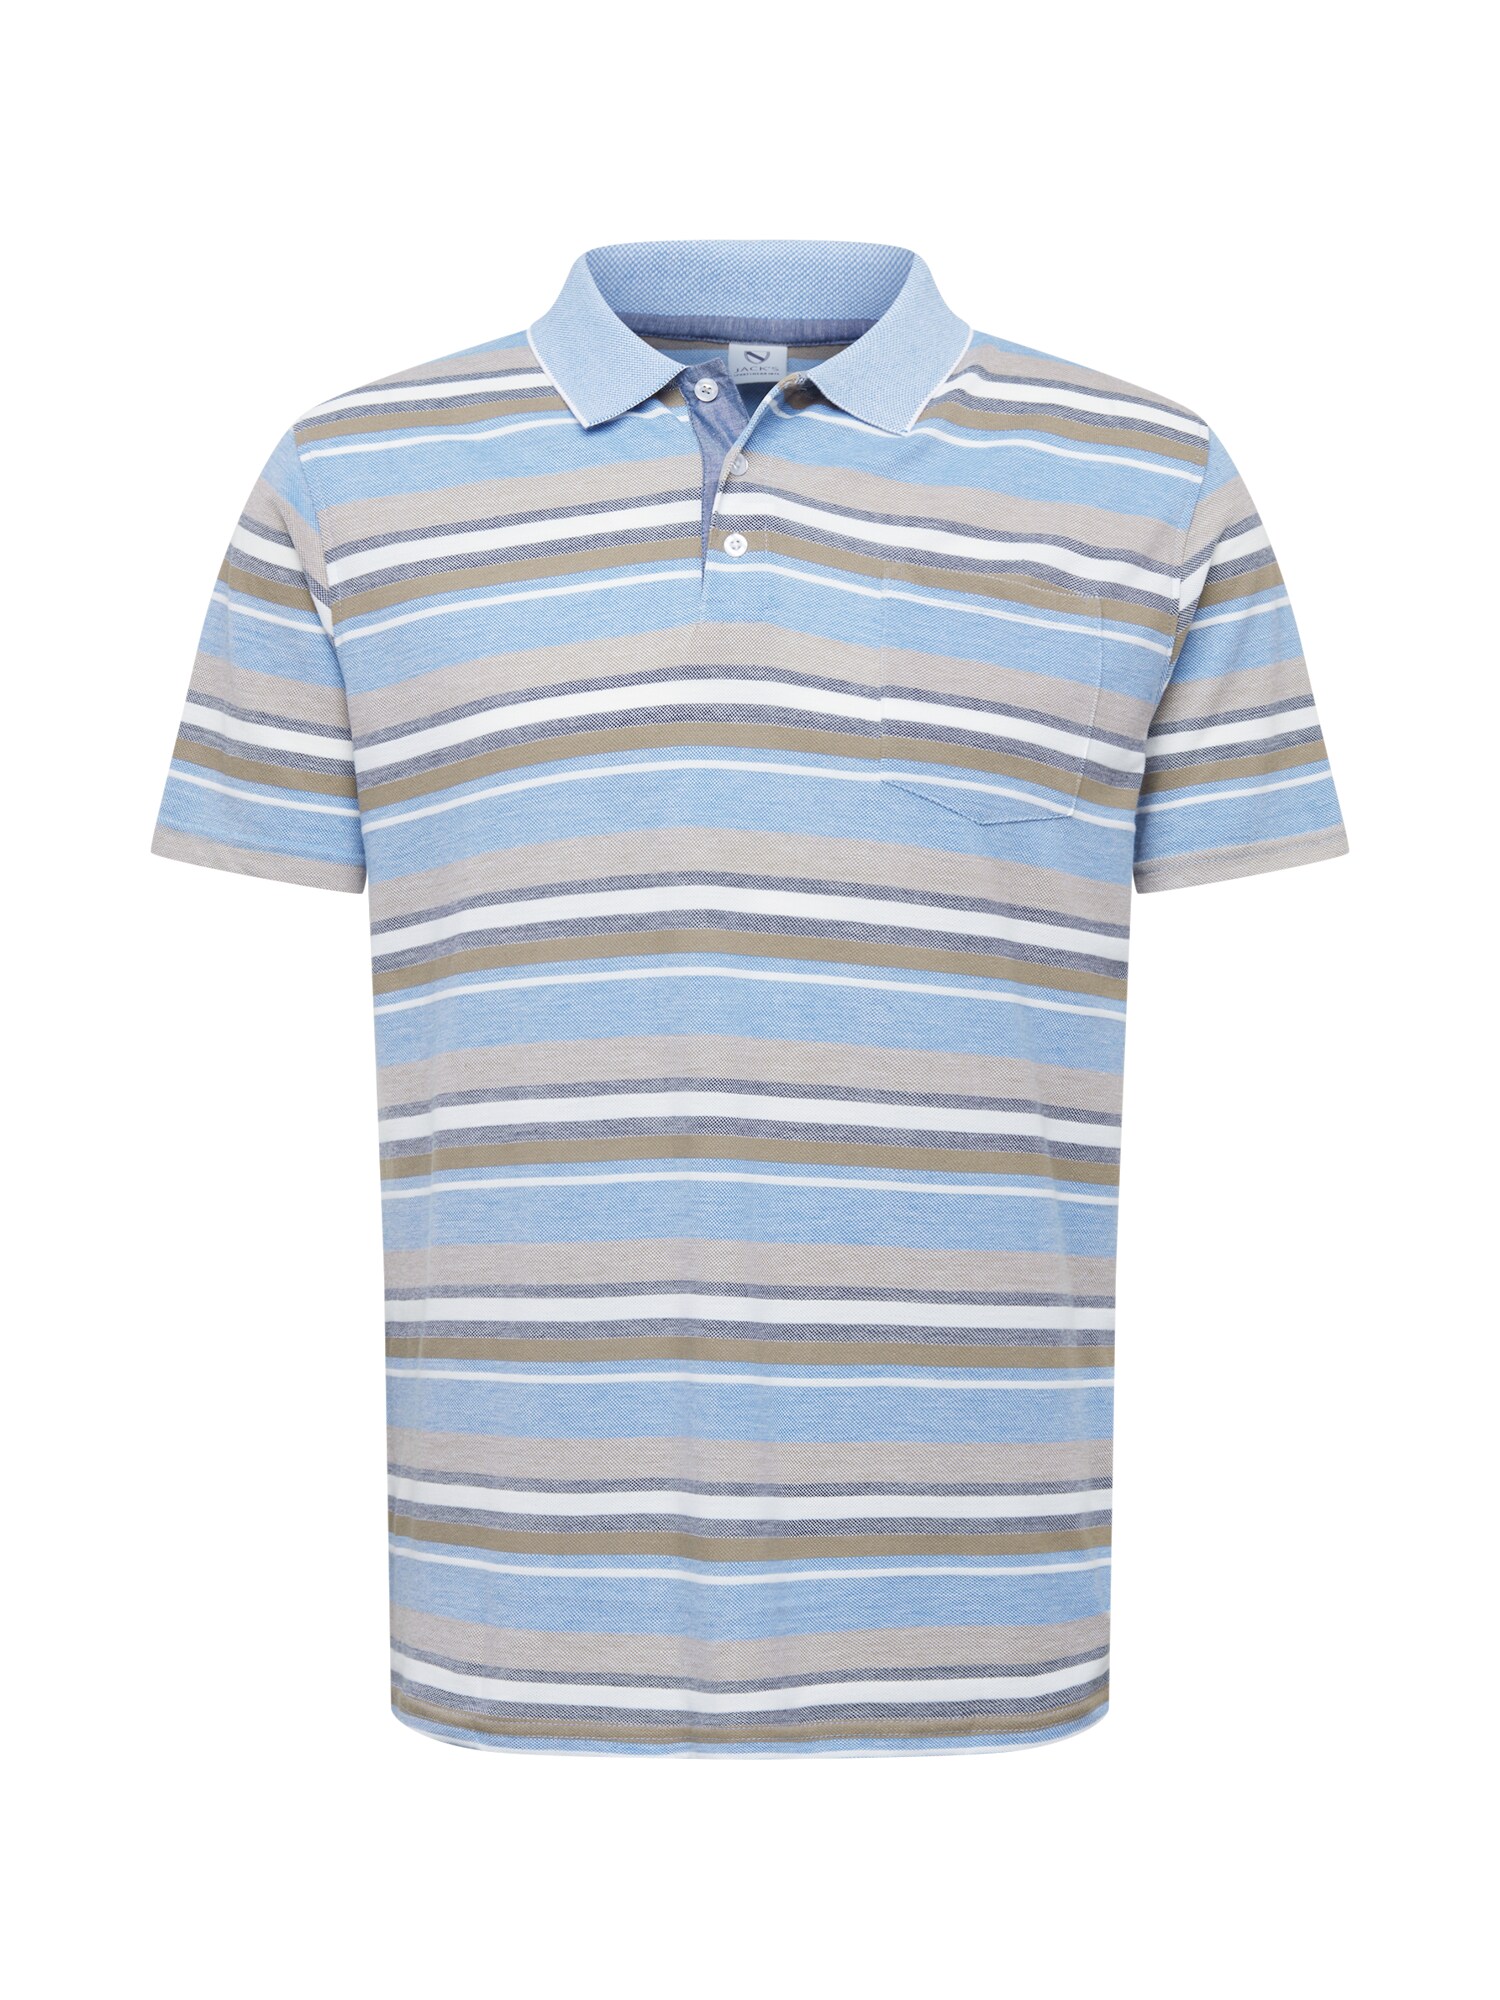 Jack's Marškinėliai pilka / šviesiai mėlyna / tamsiai mėlyna / balta / alyvuogių spalva